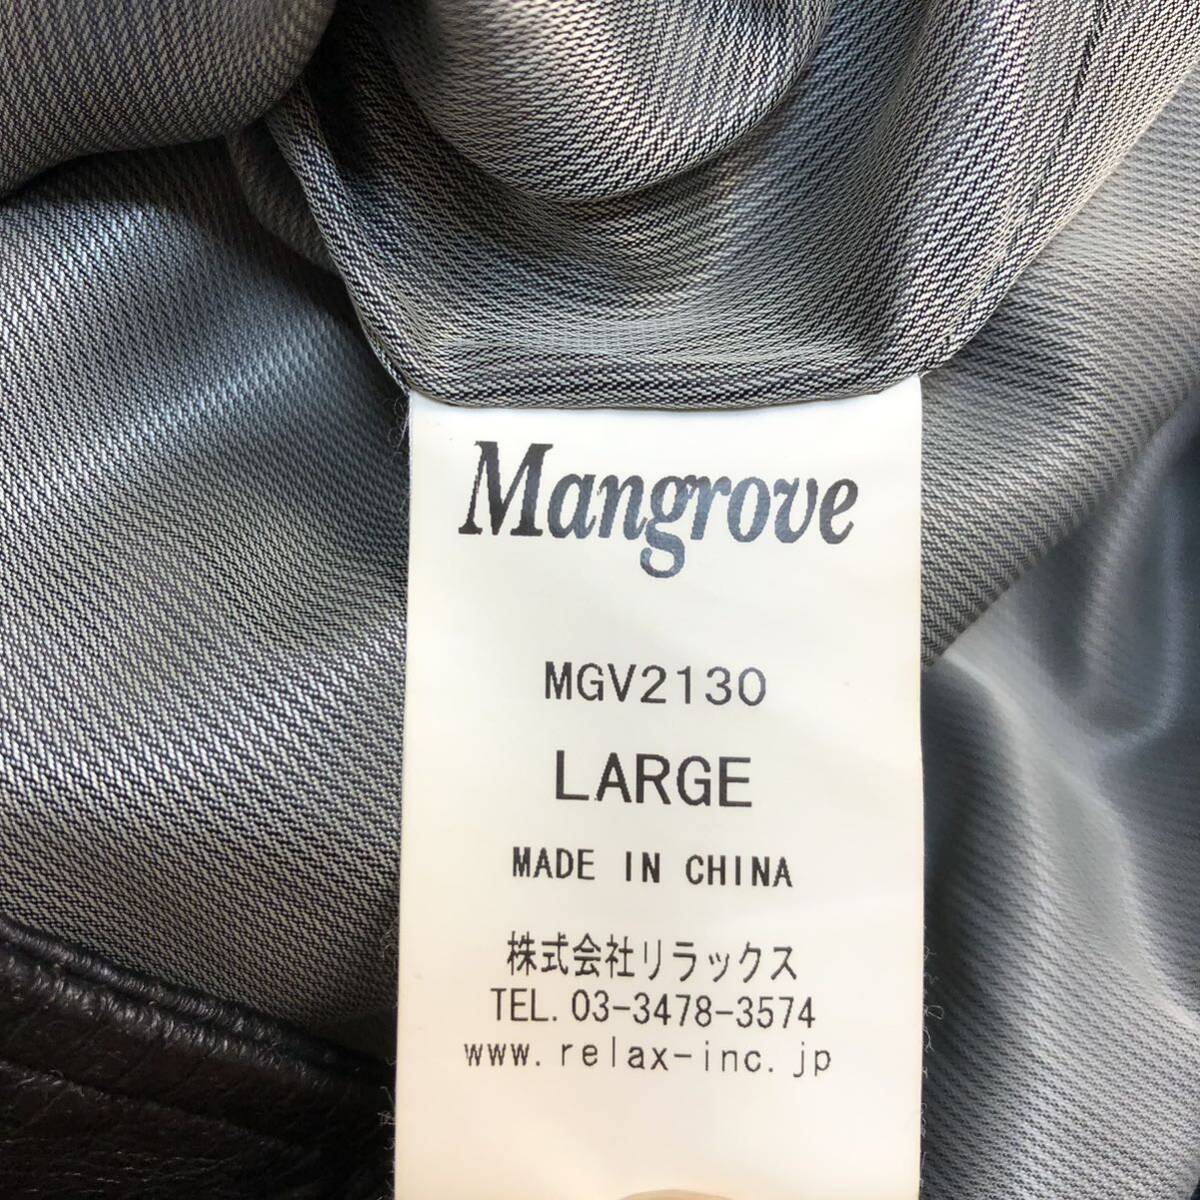 【本革】Mangrove レザージャケット ライダース 豚革 ブラック 男性用 メンズ Lサイズ N-111_画像9